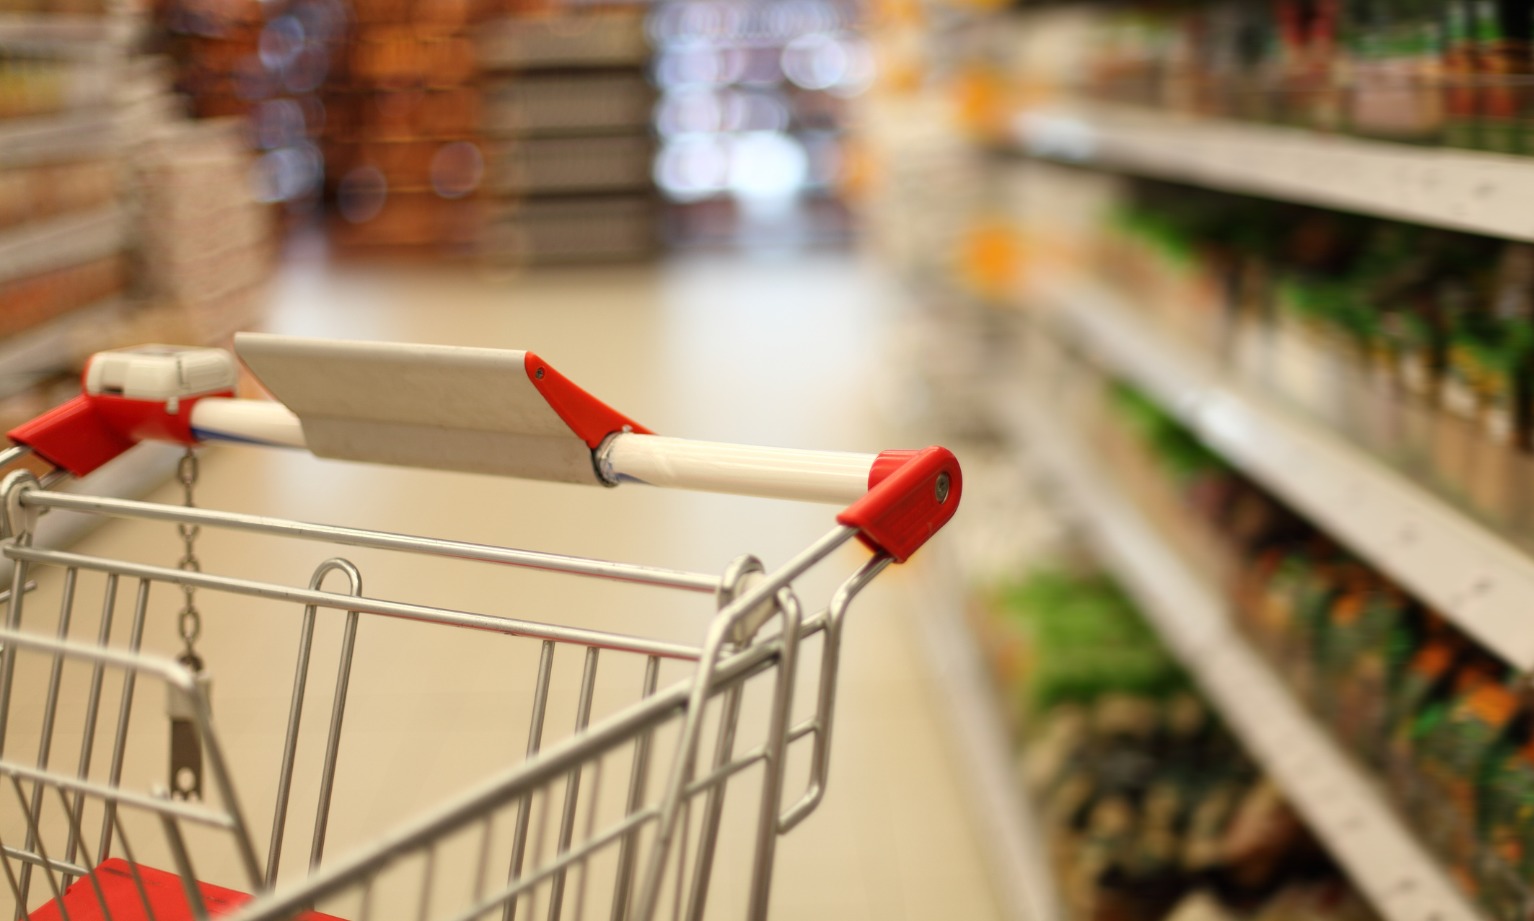 Supermercado chino: 6 tips para aprender a comprar en ellos como un experto